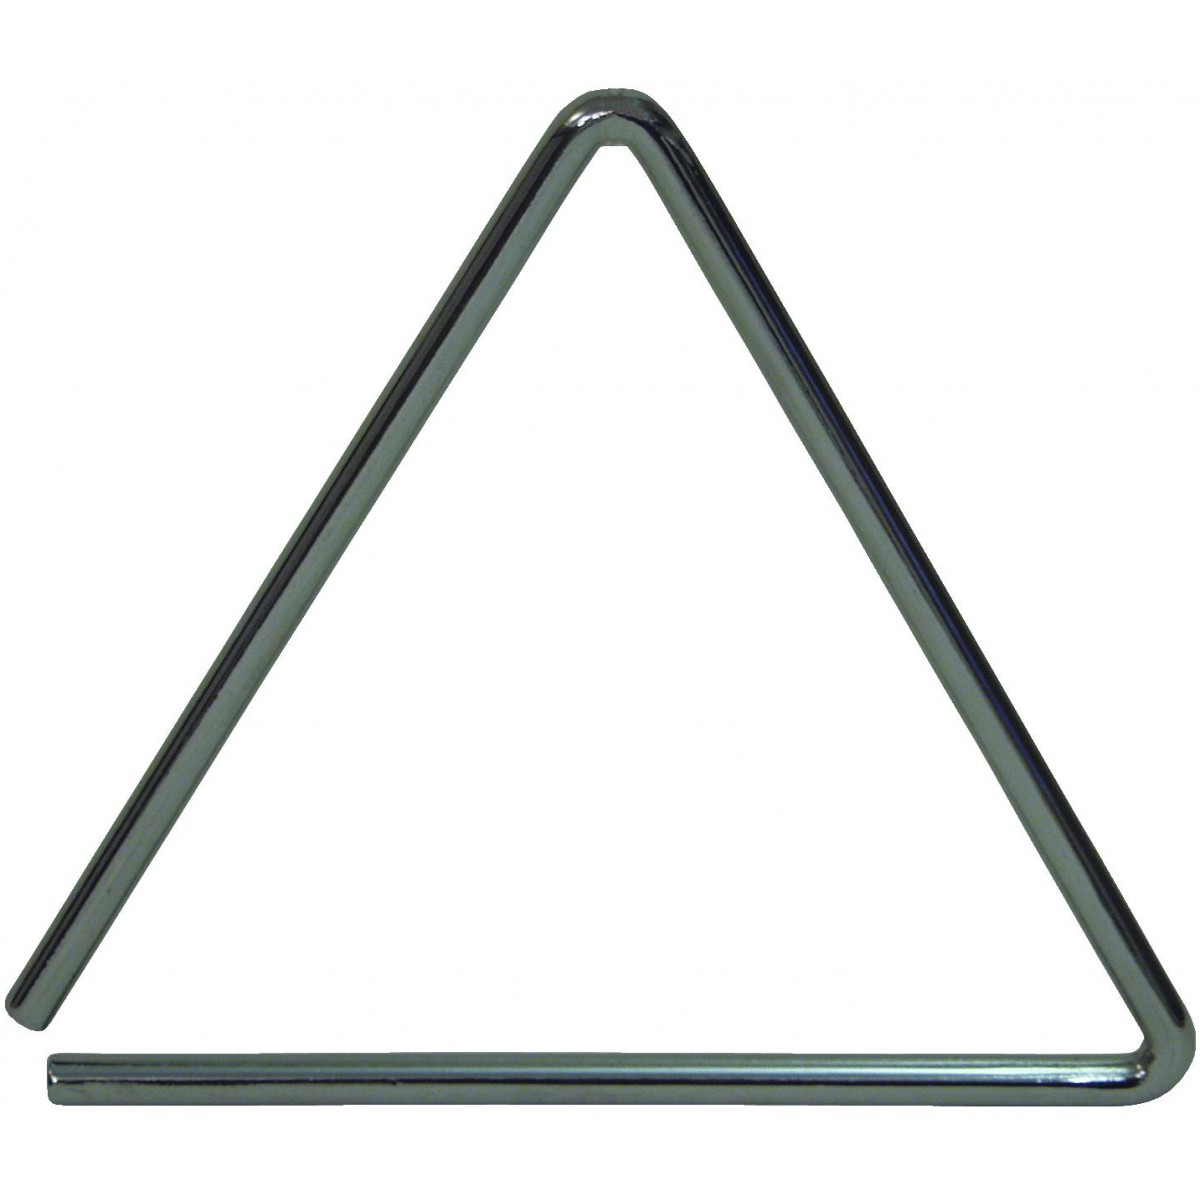 Dimavery triangl, 13 cm